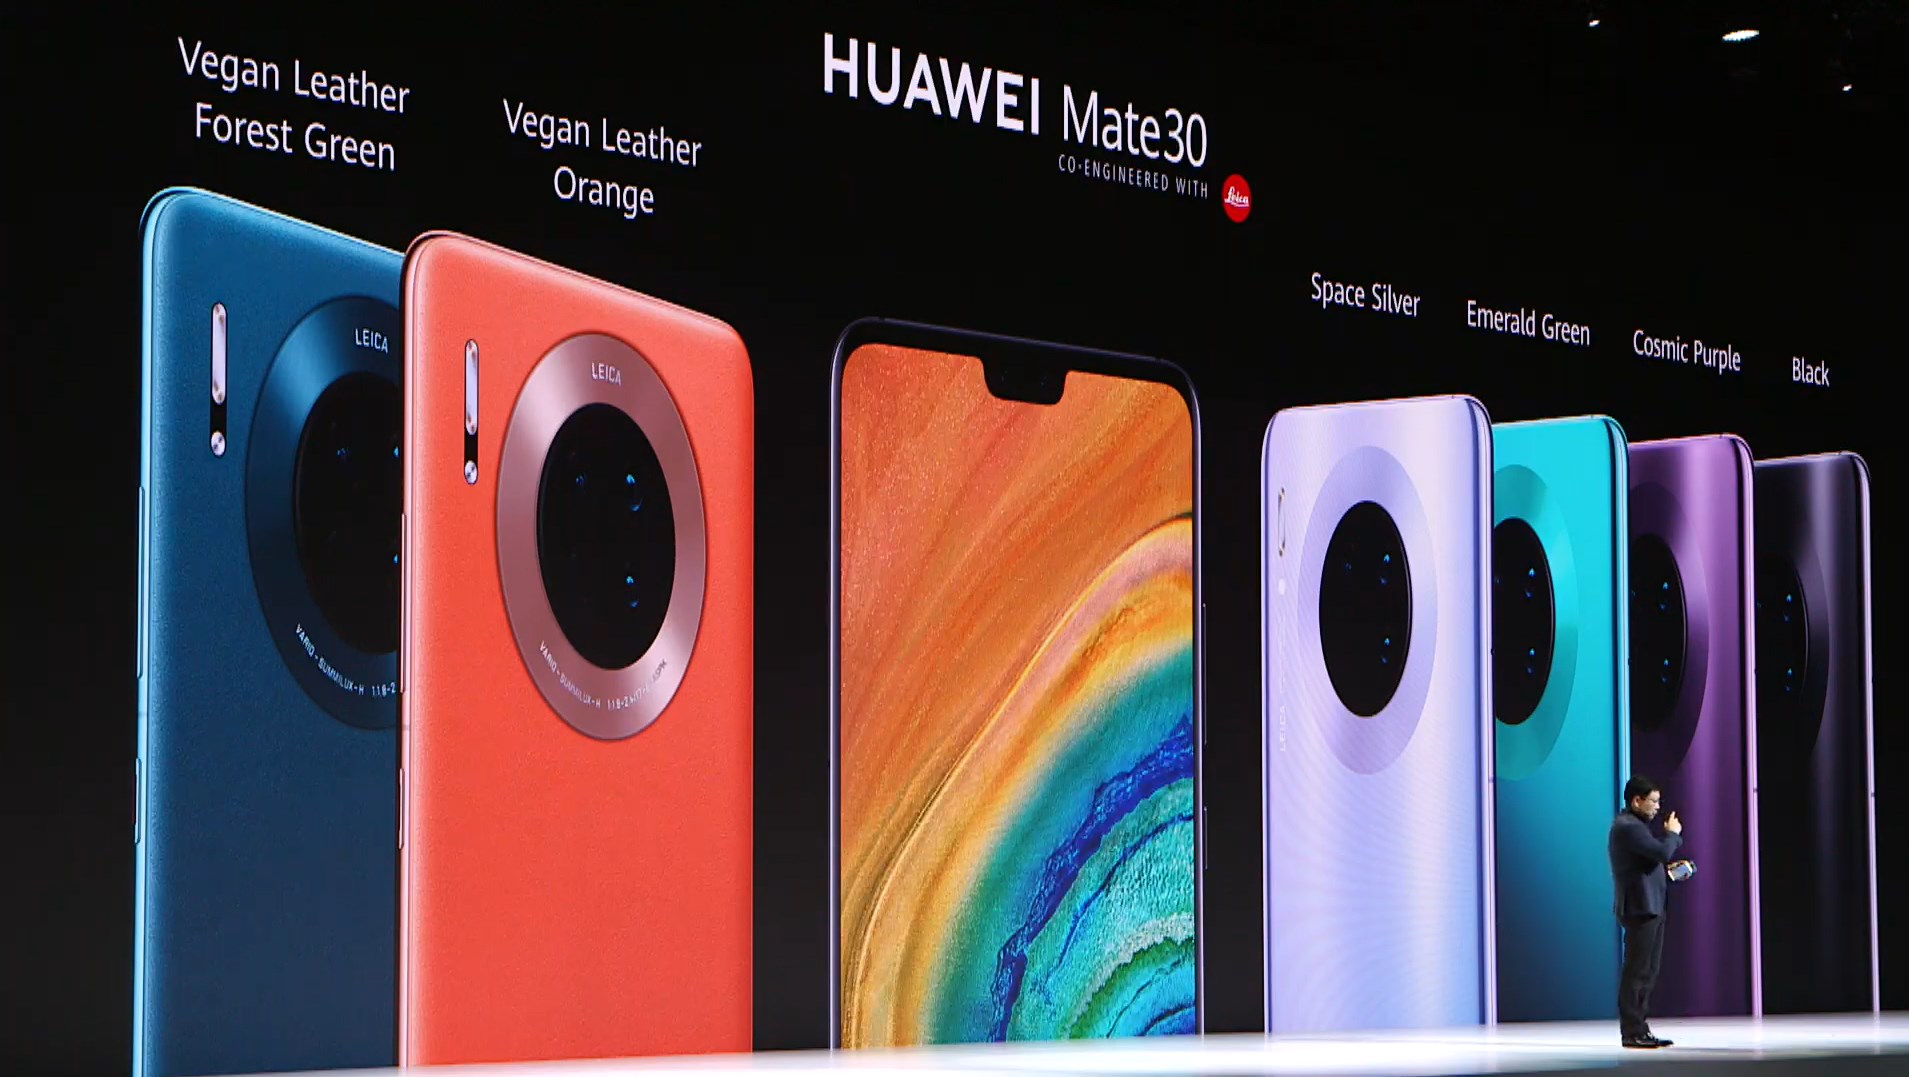 Voici tout ce qui a été annoncé par Huawei : Mate 30, Mate 30 Pro